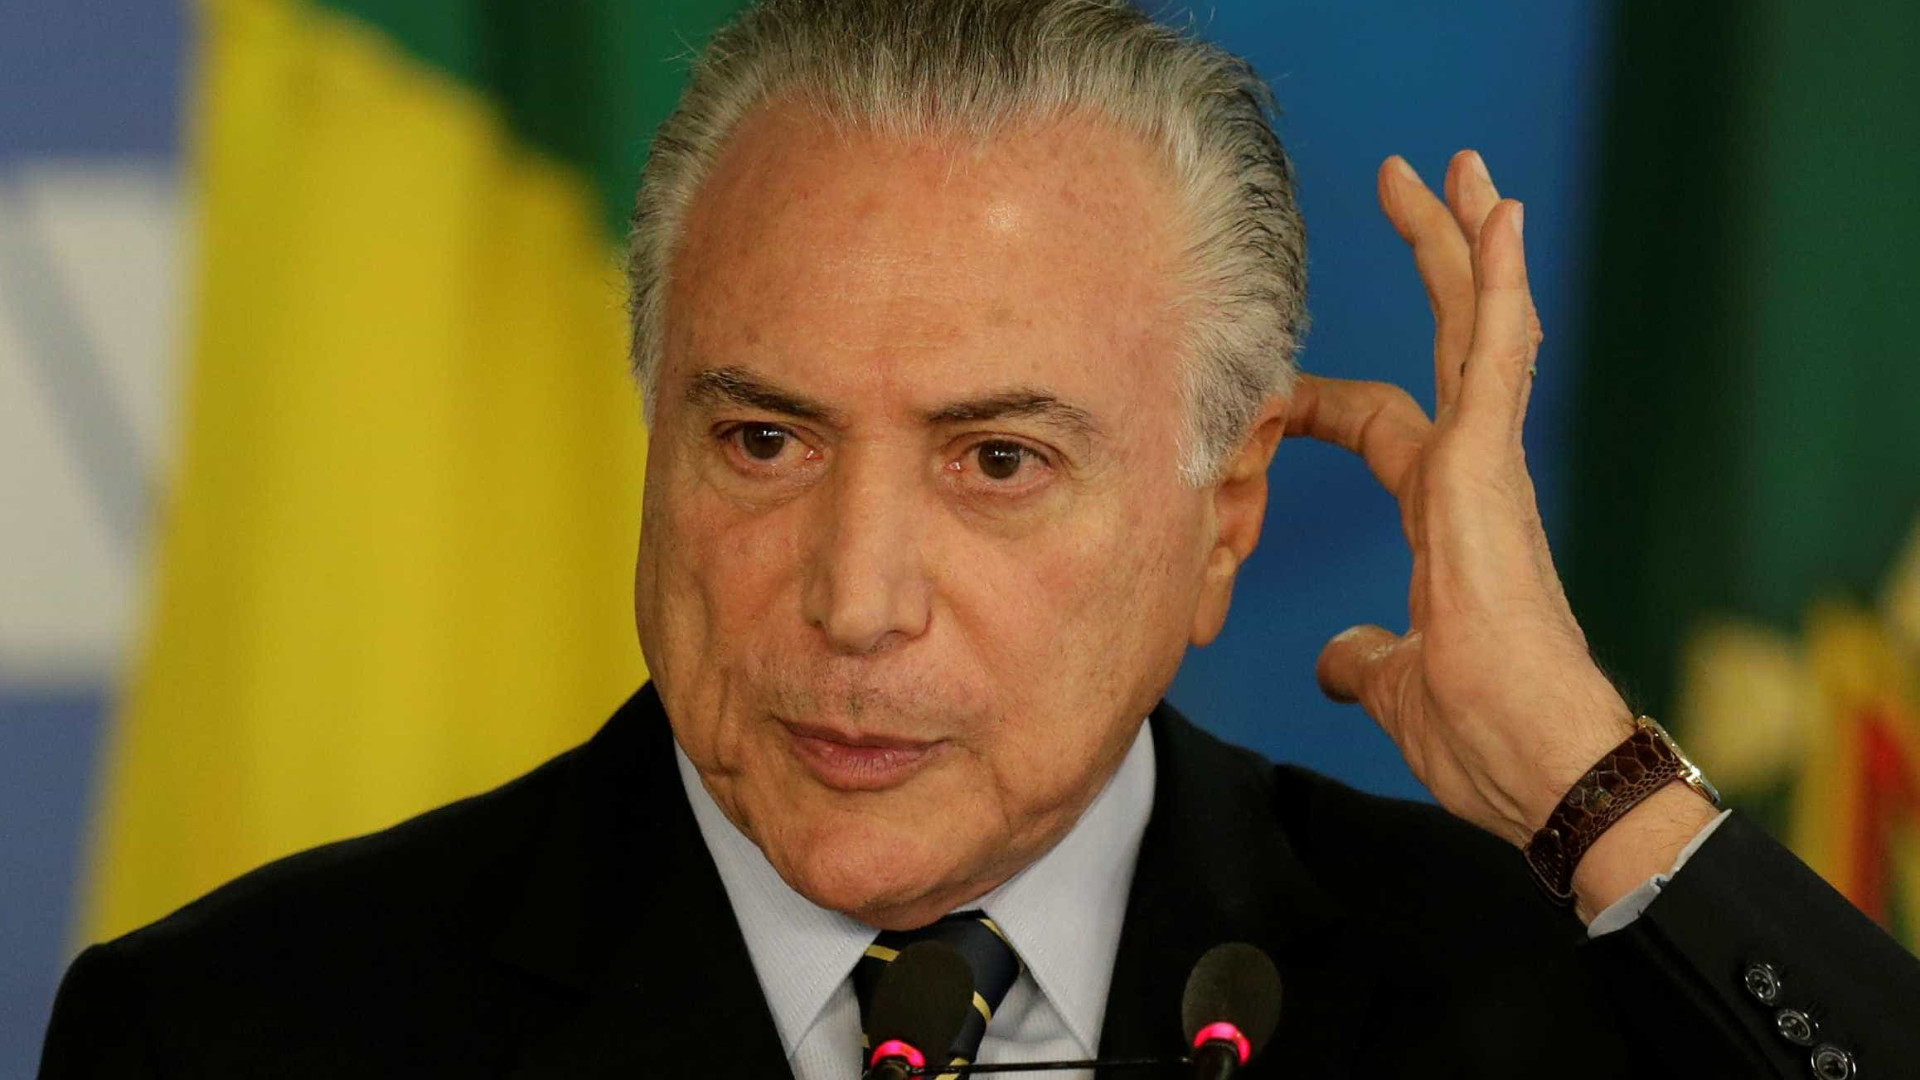 Enterro da nova Previdência rebaixaria nota de crédito do Brasil